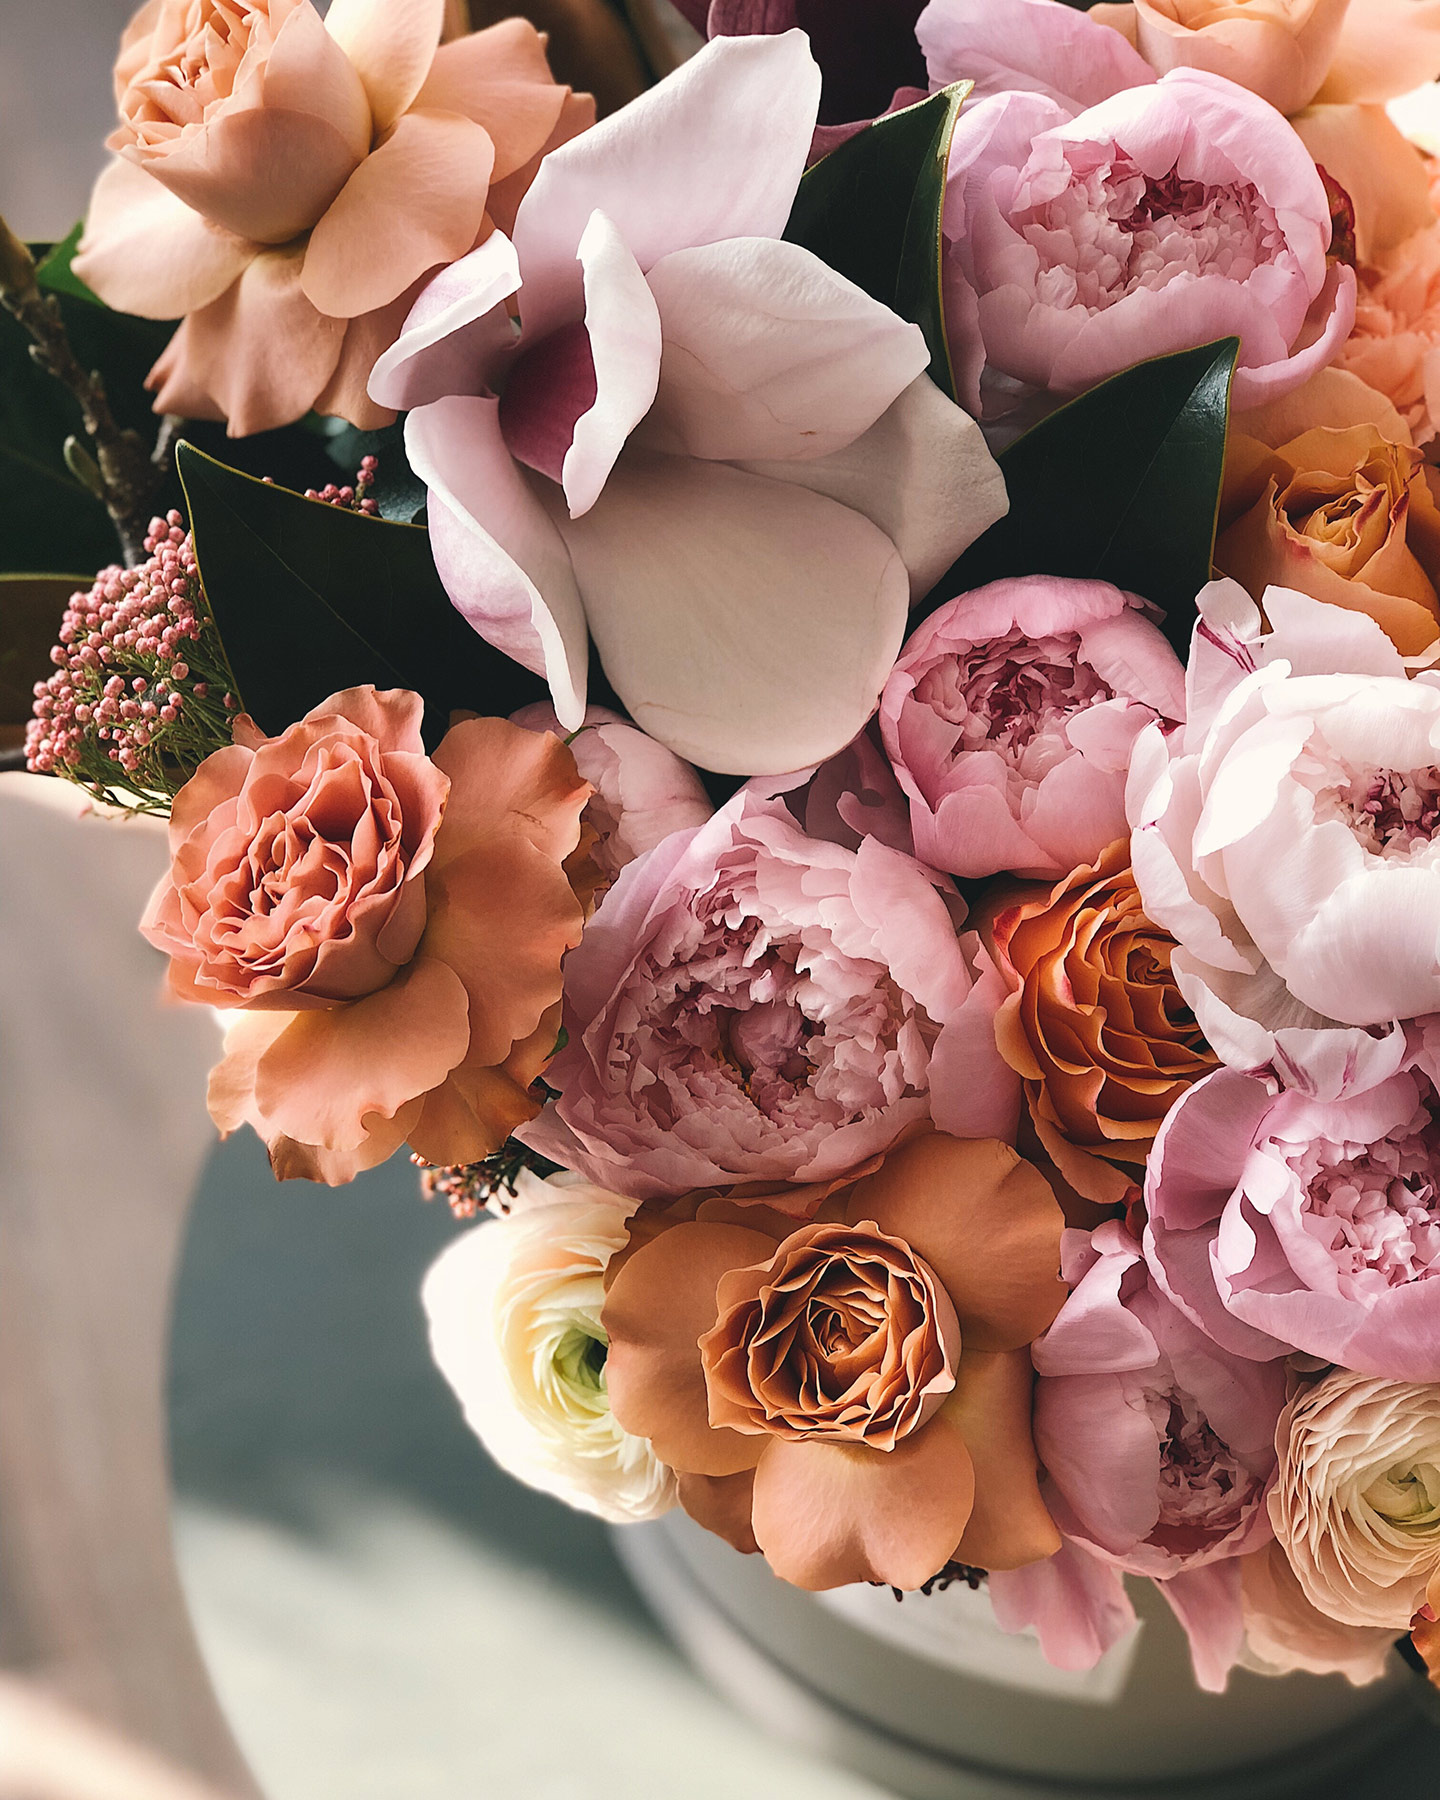 Blumenbpuquet in Rosa, Orange und weiteren Pastelligen Frühlingsfarben auf einem Tisch drapiert.